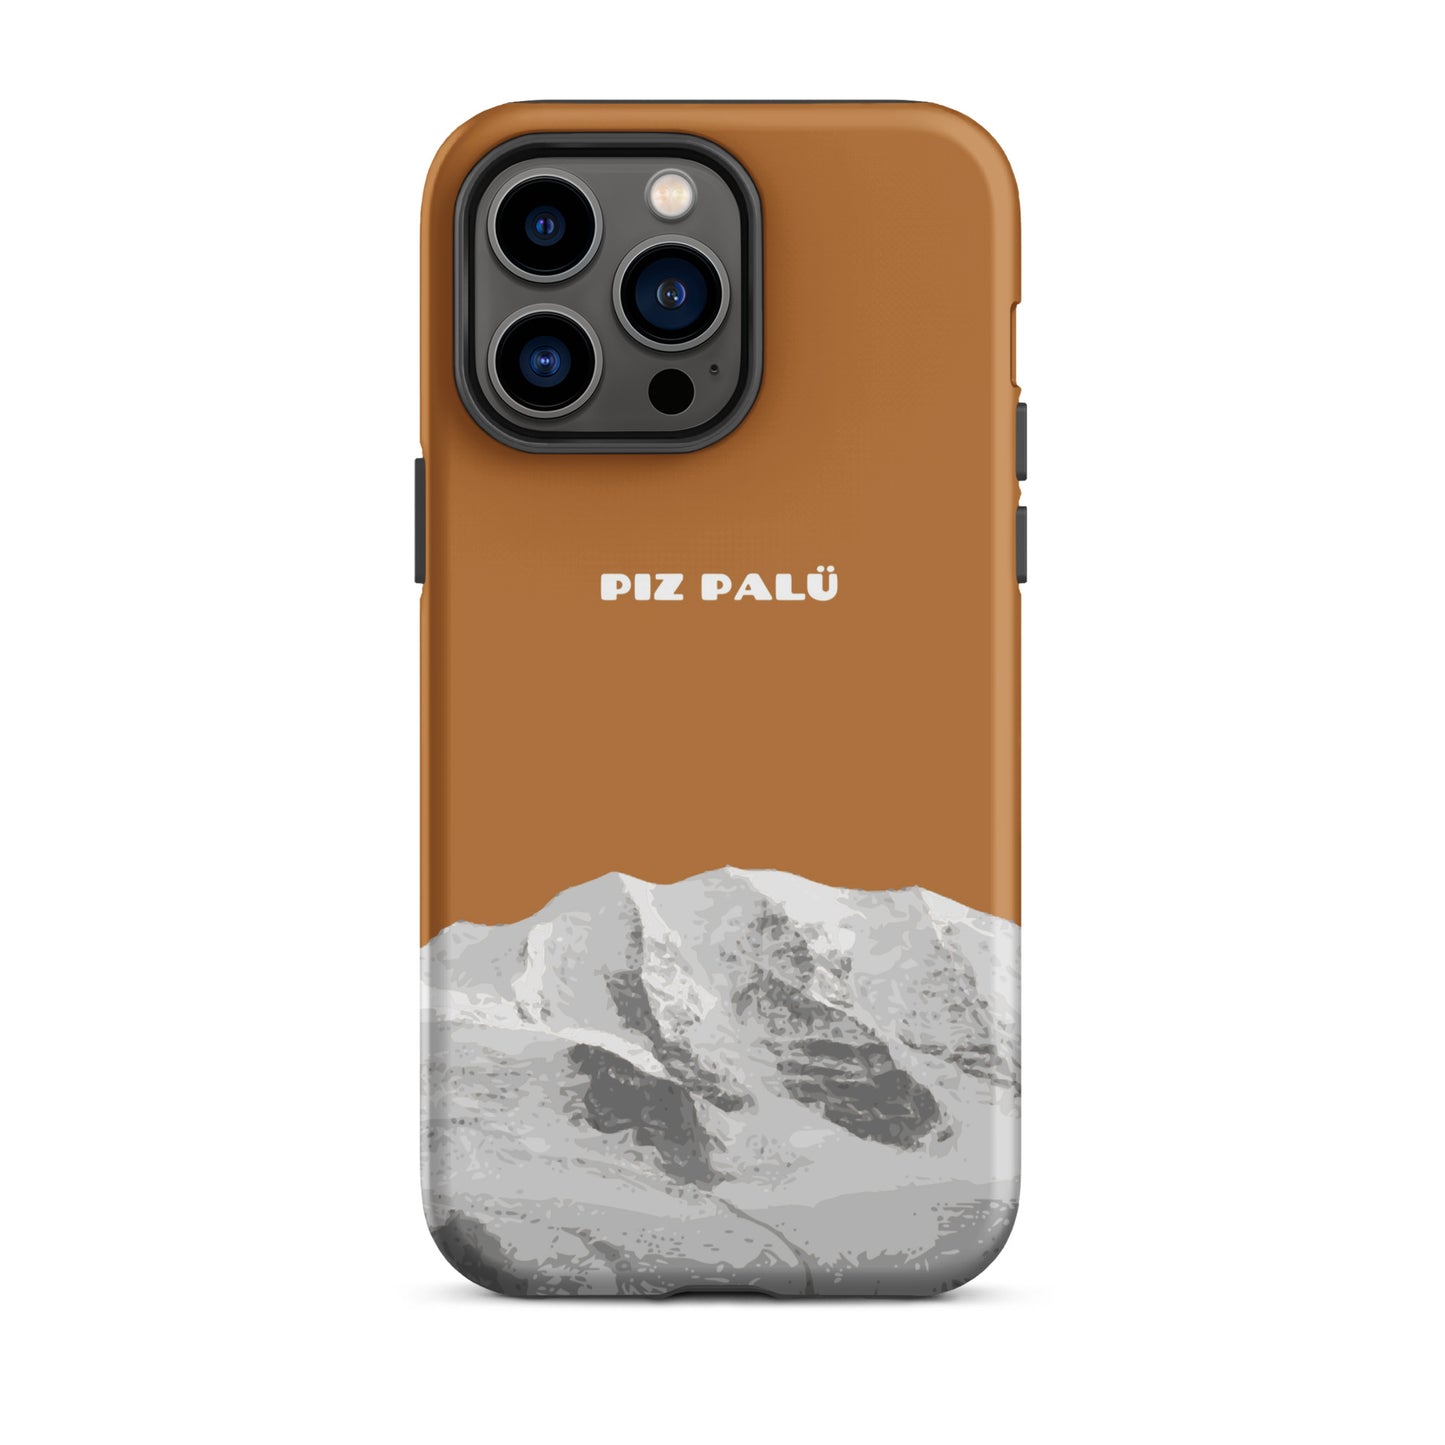 Hülle für das iPhone 14 Pro Max von Apple in der Farbe Kupfer, dass den Piz Palü in Graubünden zeigt.